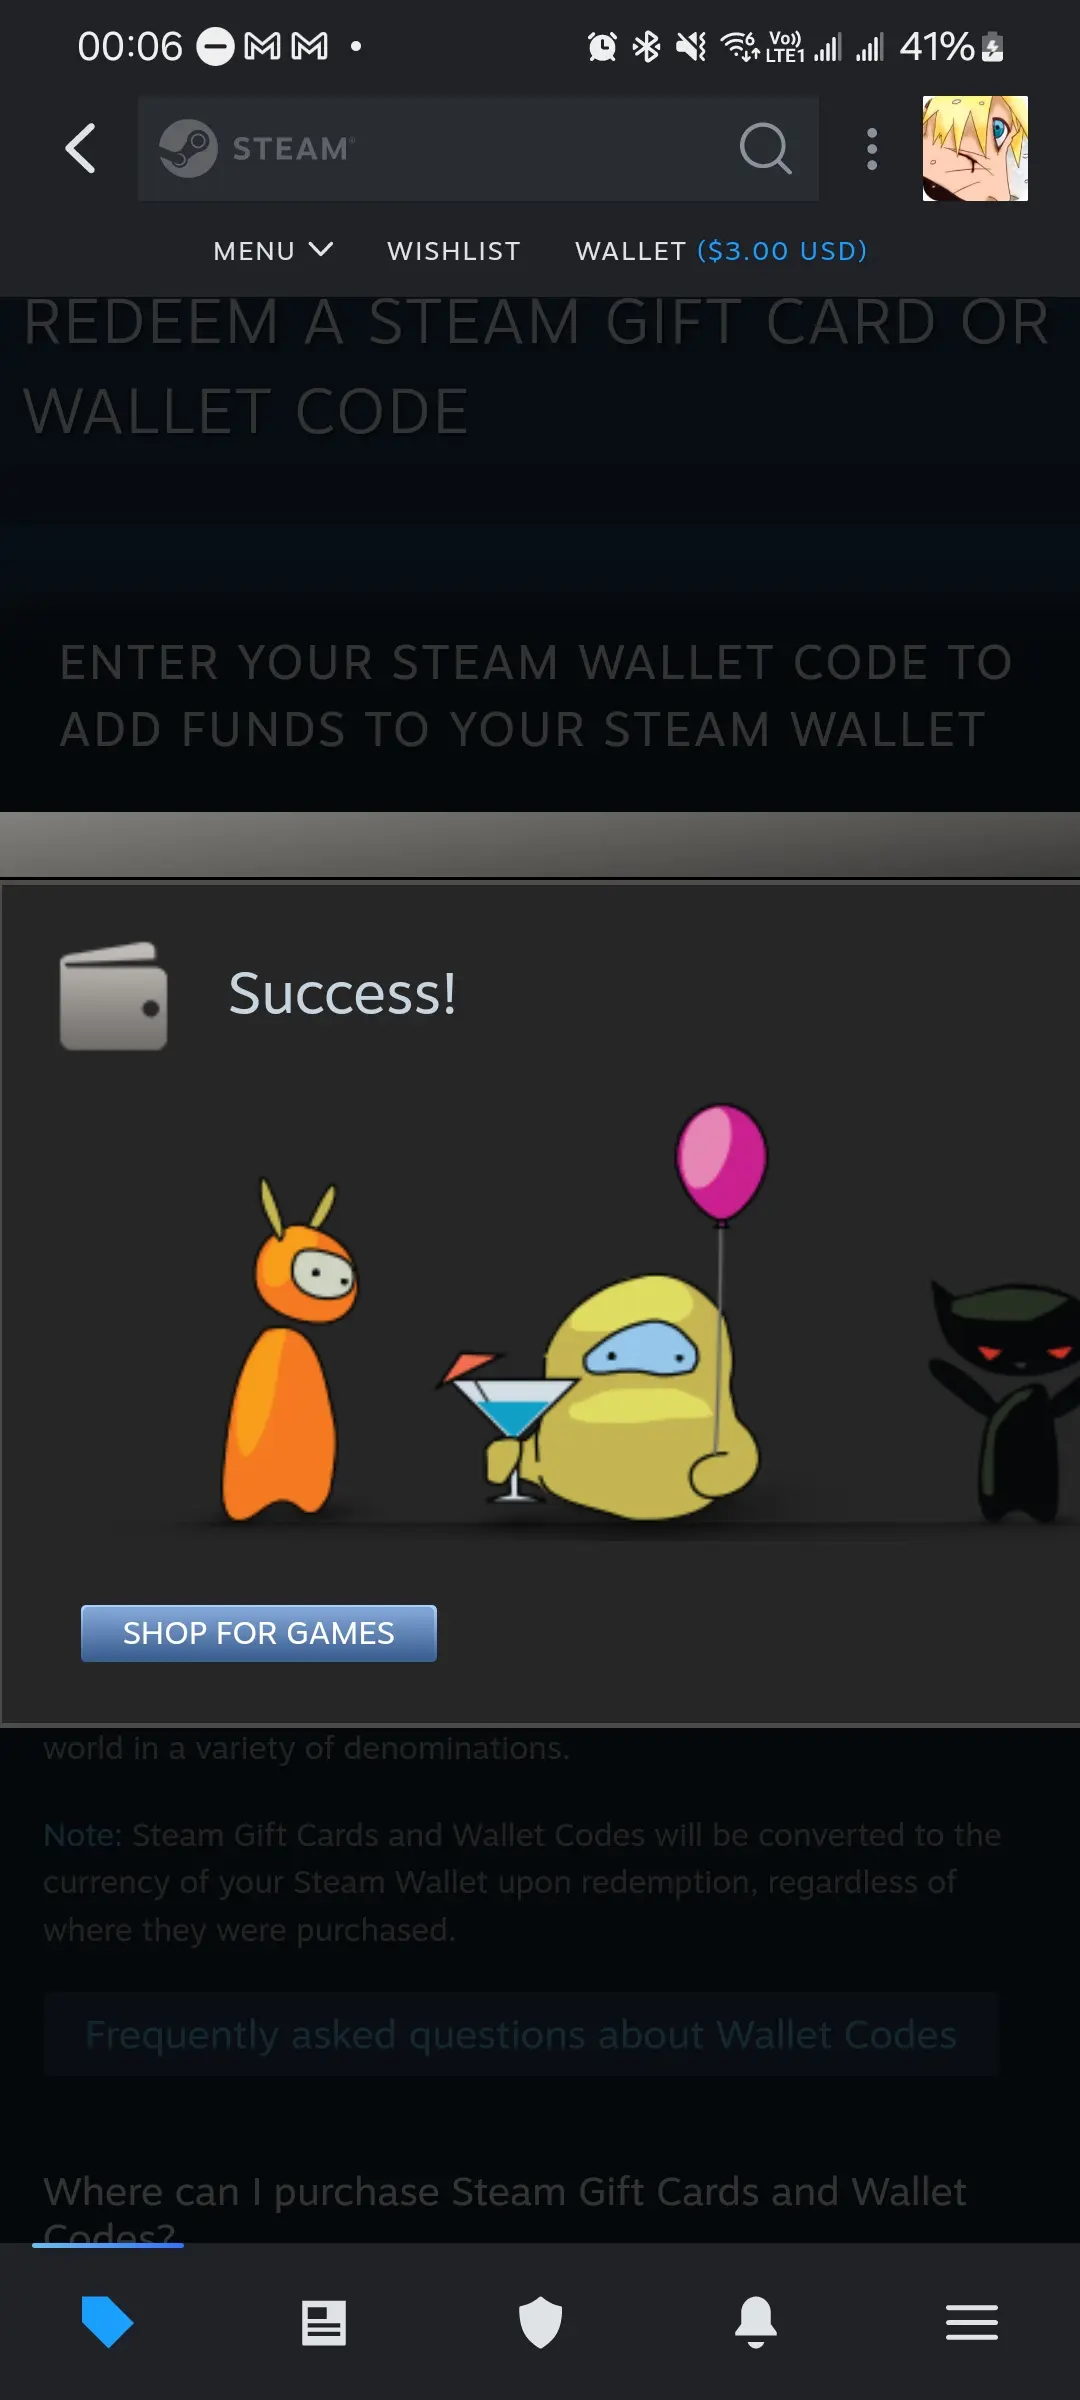 فرآیند وارد کردن کلید استیم (Steam) یا کد کیف پول در اندروید با موفقیت به پایان رسید